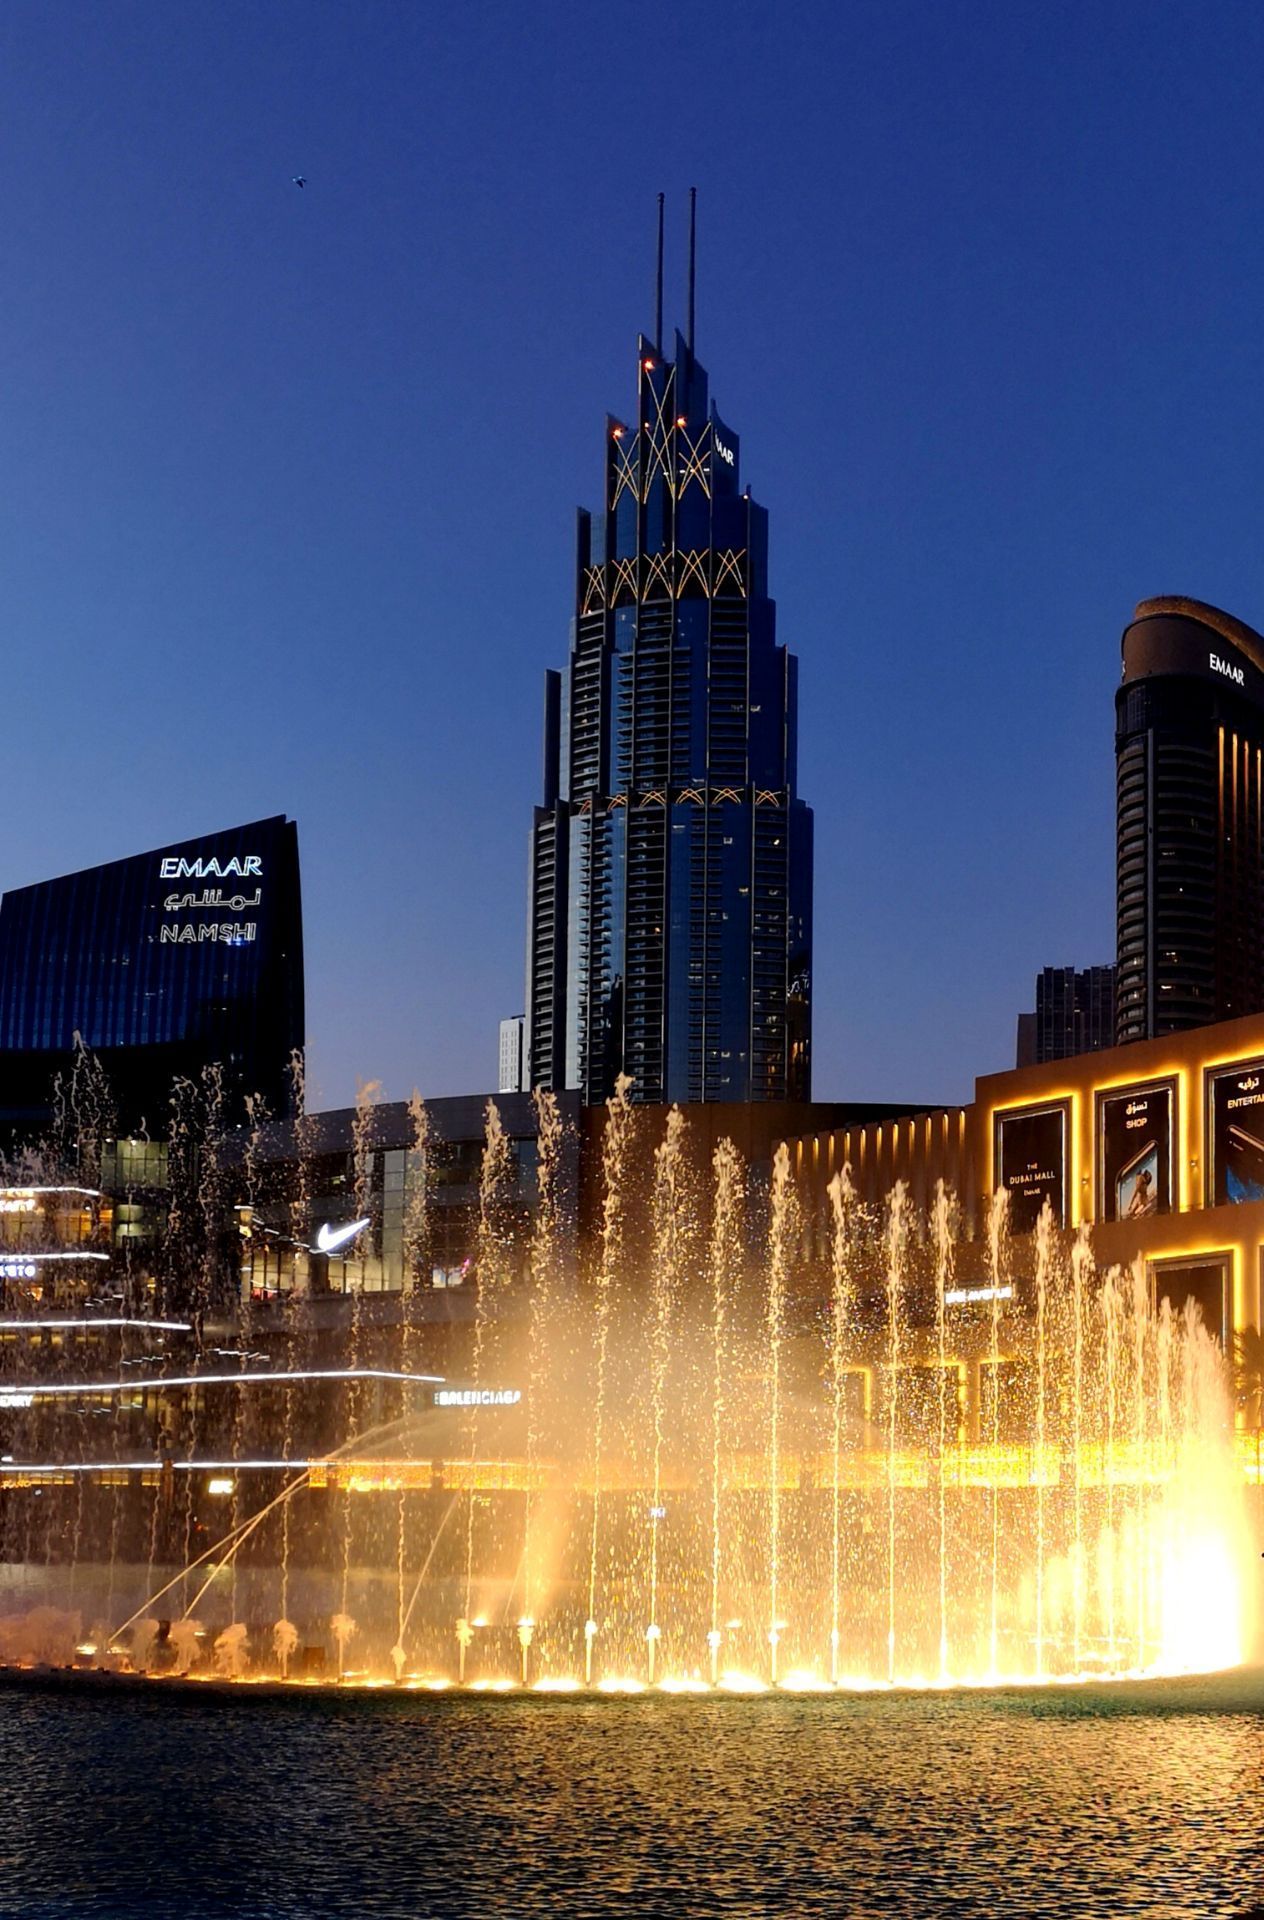 迪拜音乐喷泉由原世界第一美国bellagio喷泉的制造商wet公司设计的,总